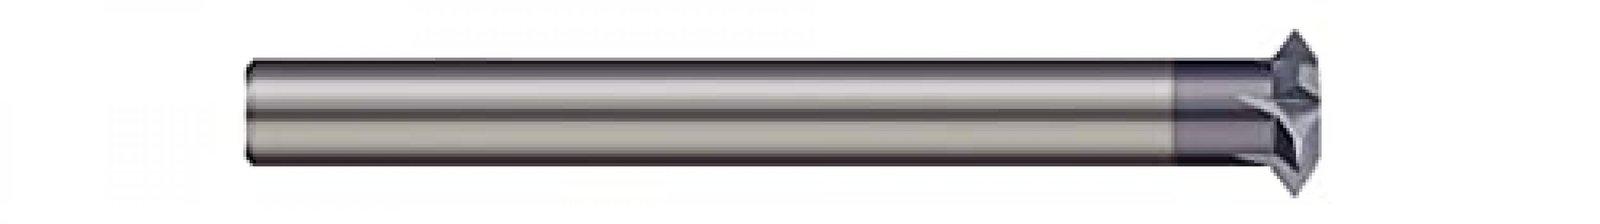 Micro 100 TM-500X Thread Milling Cutter - UN, 11-32 Thread Size, 1/2" Cutter Dia, 0.002" Flat, 5 Fl, 5 Fl, 5/16" Shank Dia, 2.610" OAL, AlTiN